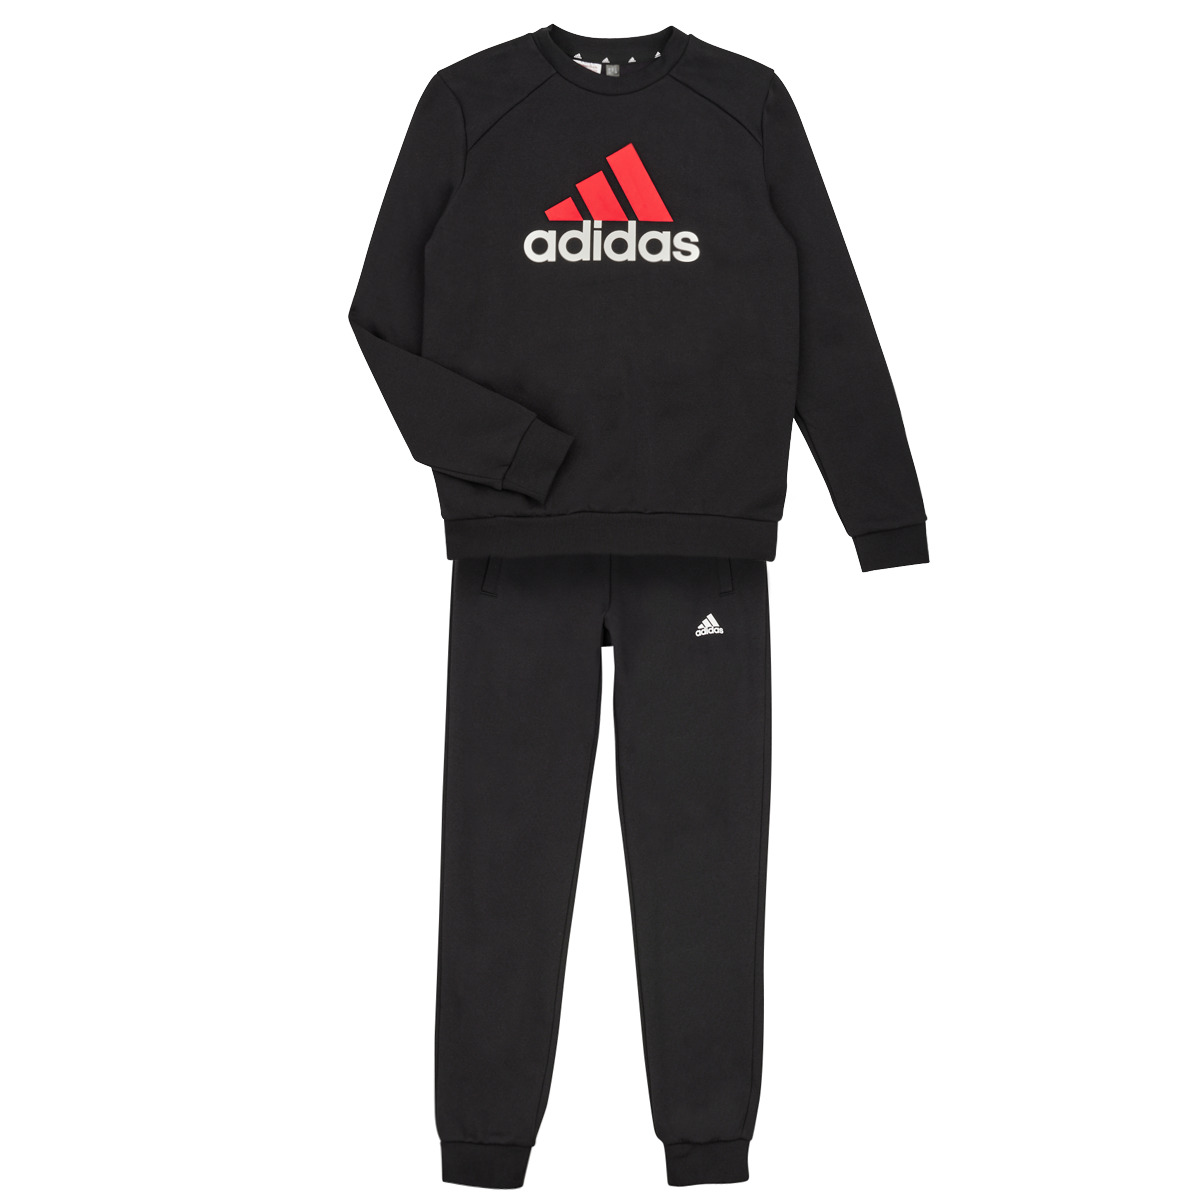 Adidas Sportswear Noir / Rouge / Blanc BL FL TS 2S7cThI4